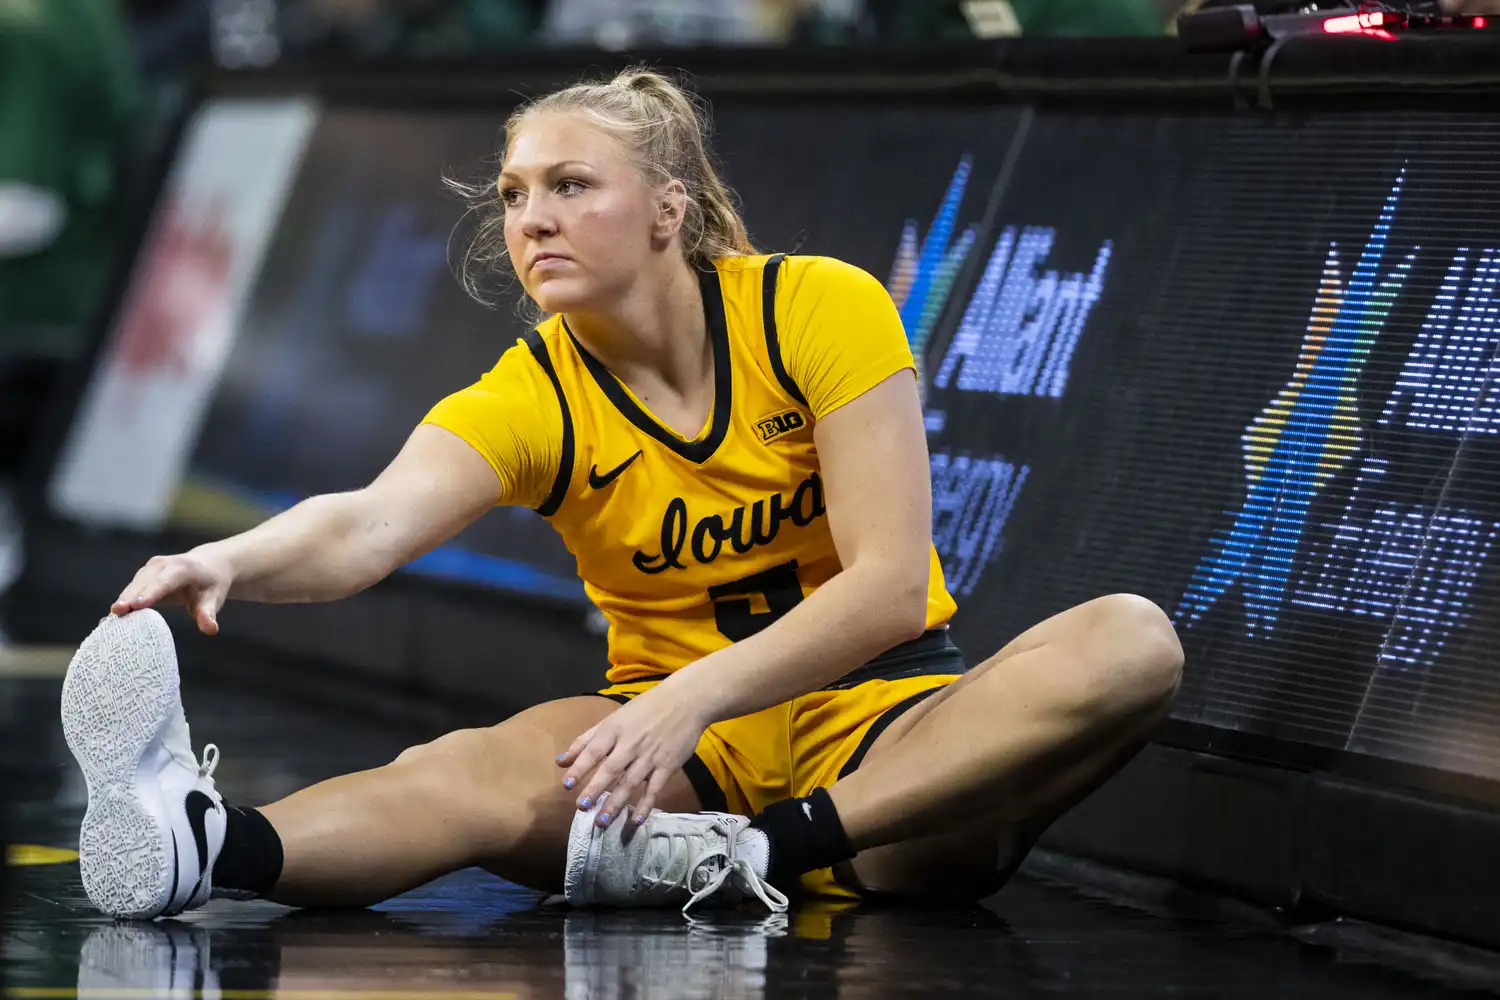 Chicago Toughness: La escolta Sydney Affolter aporta una energía inigualable al equipo de baloncesto femenino de Iowa